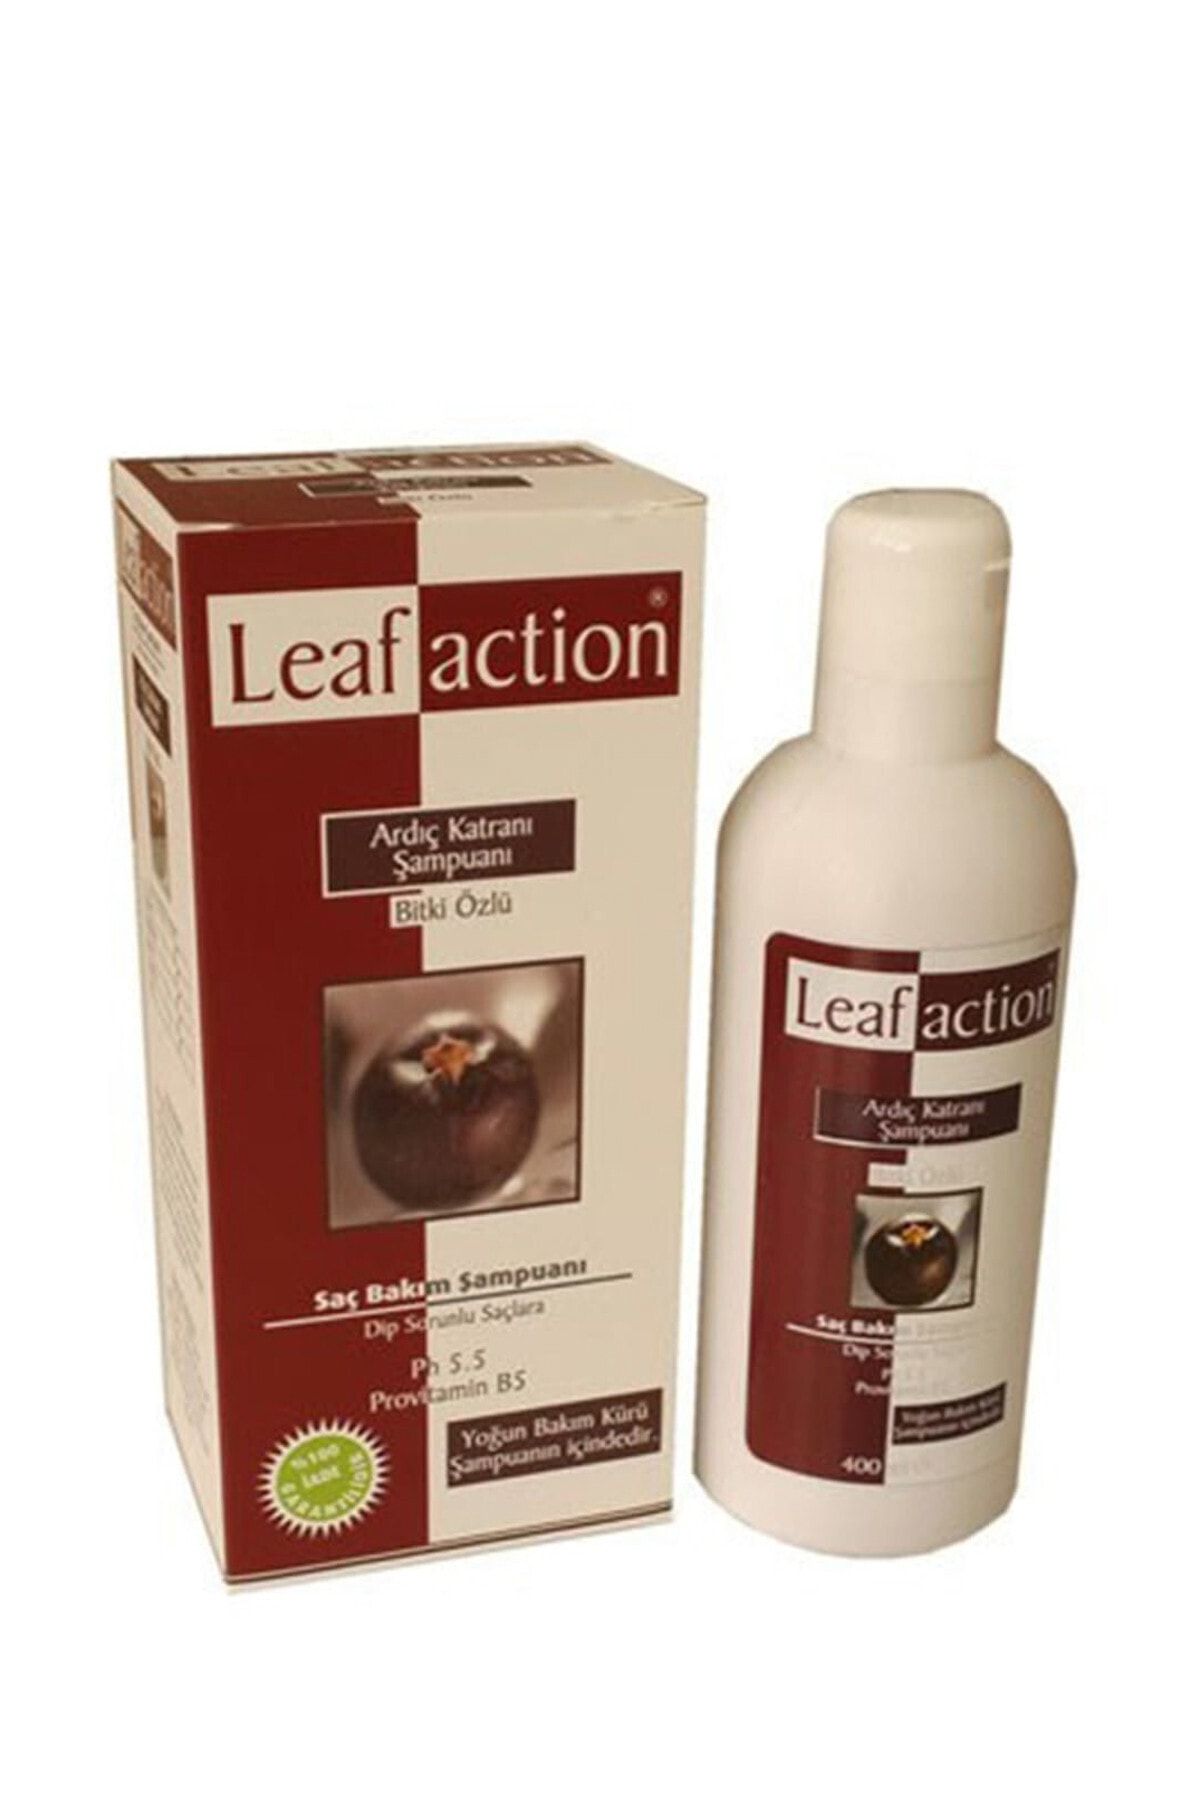 Leaf Action Ardıç Katranı Şampuanı Bitki Özlü 400 ml